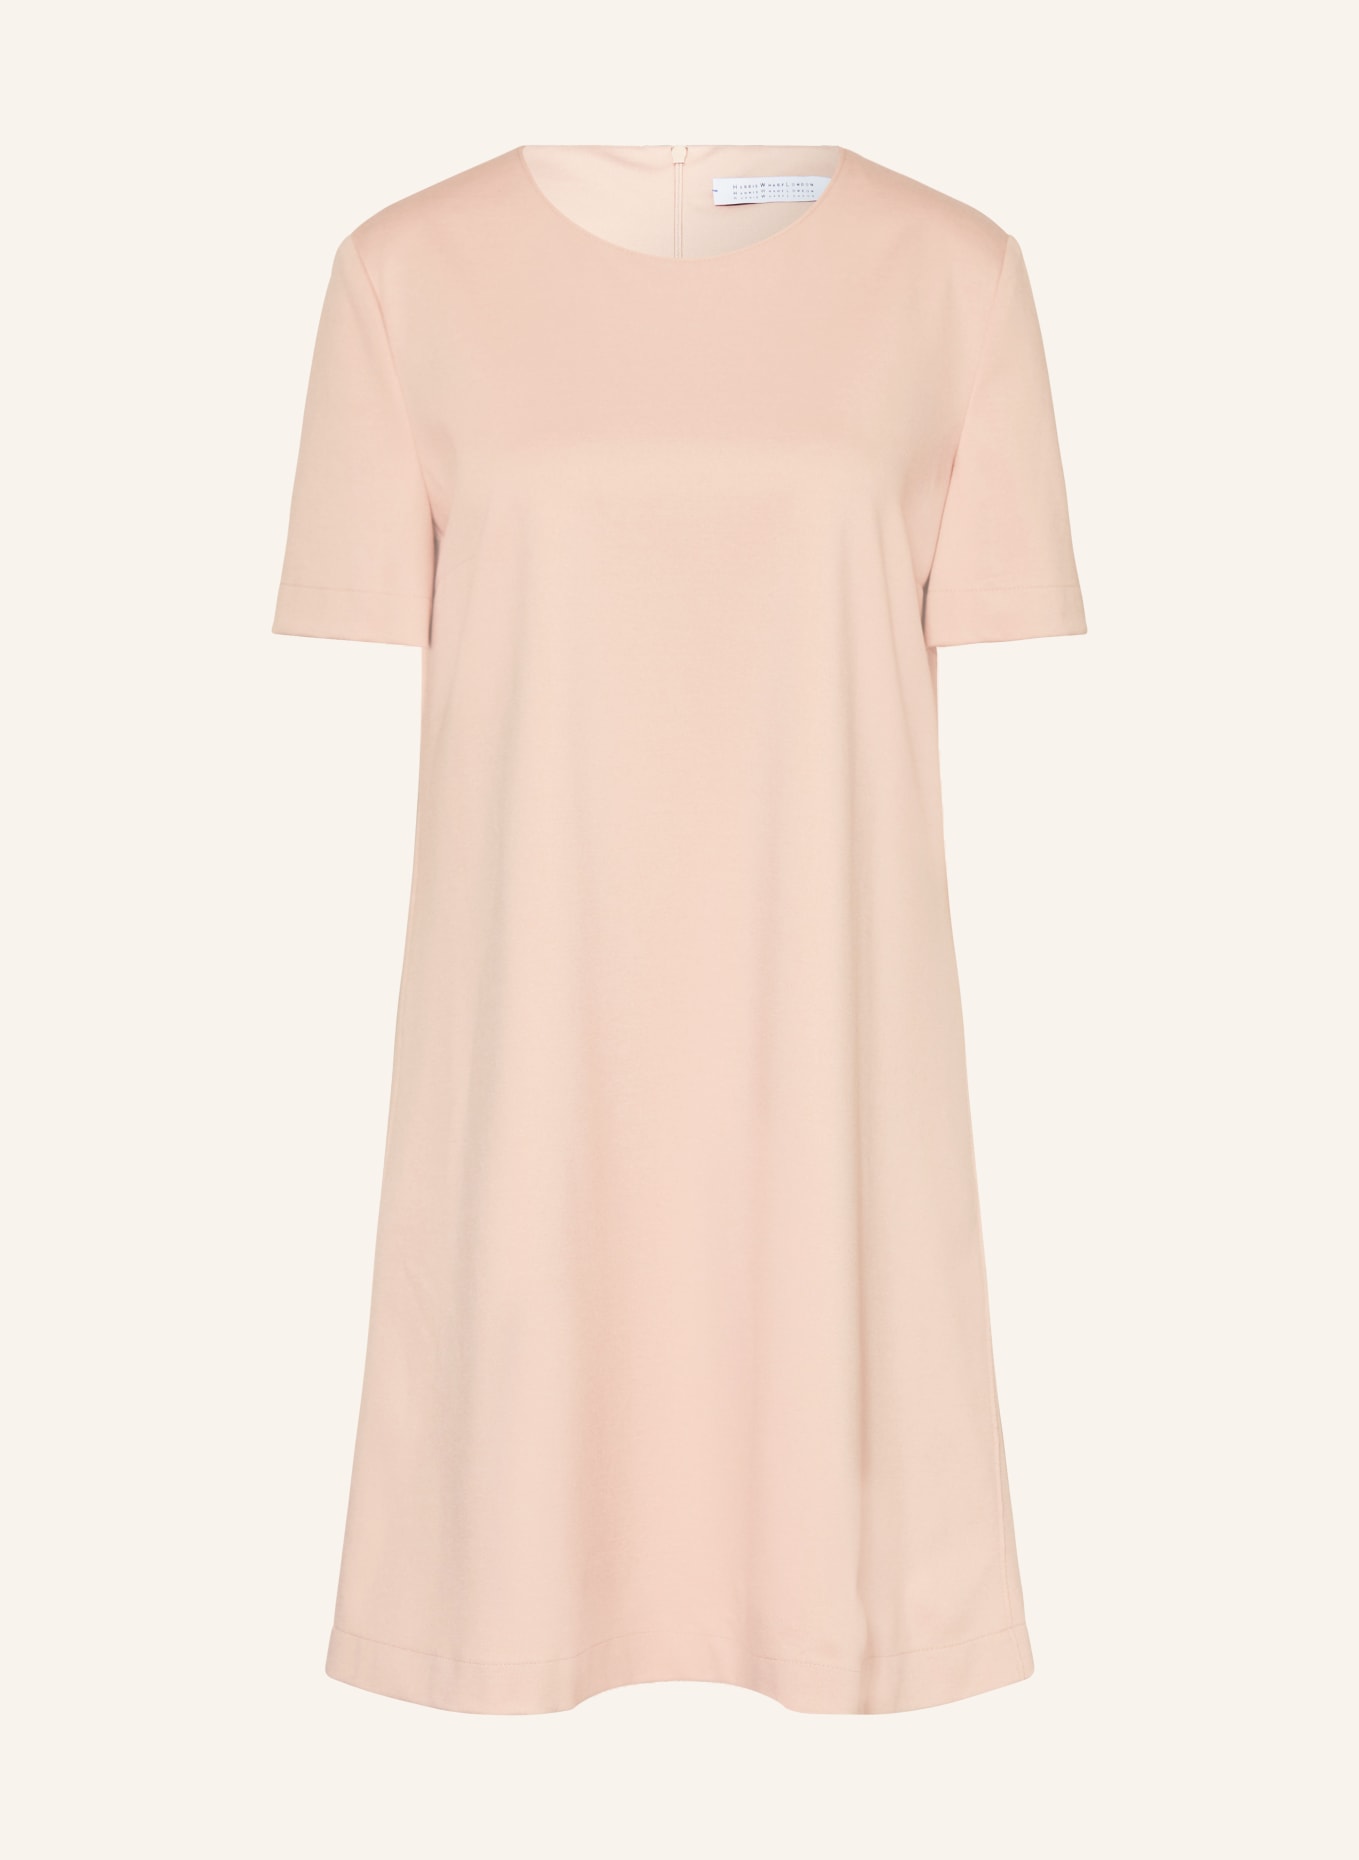 HARRIS WHARF LONDON Kleid, Farbe: ROSÉ (Bild 1)